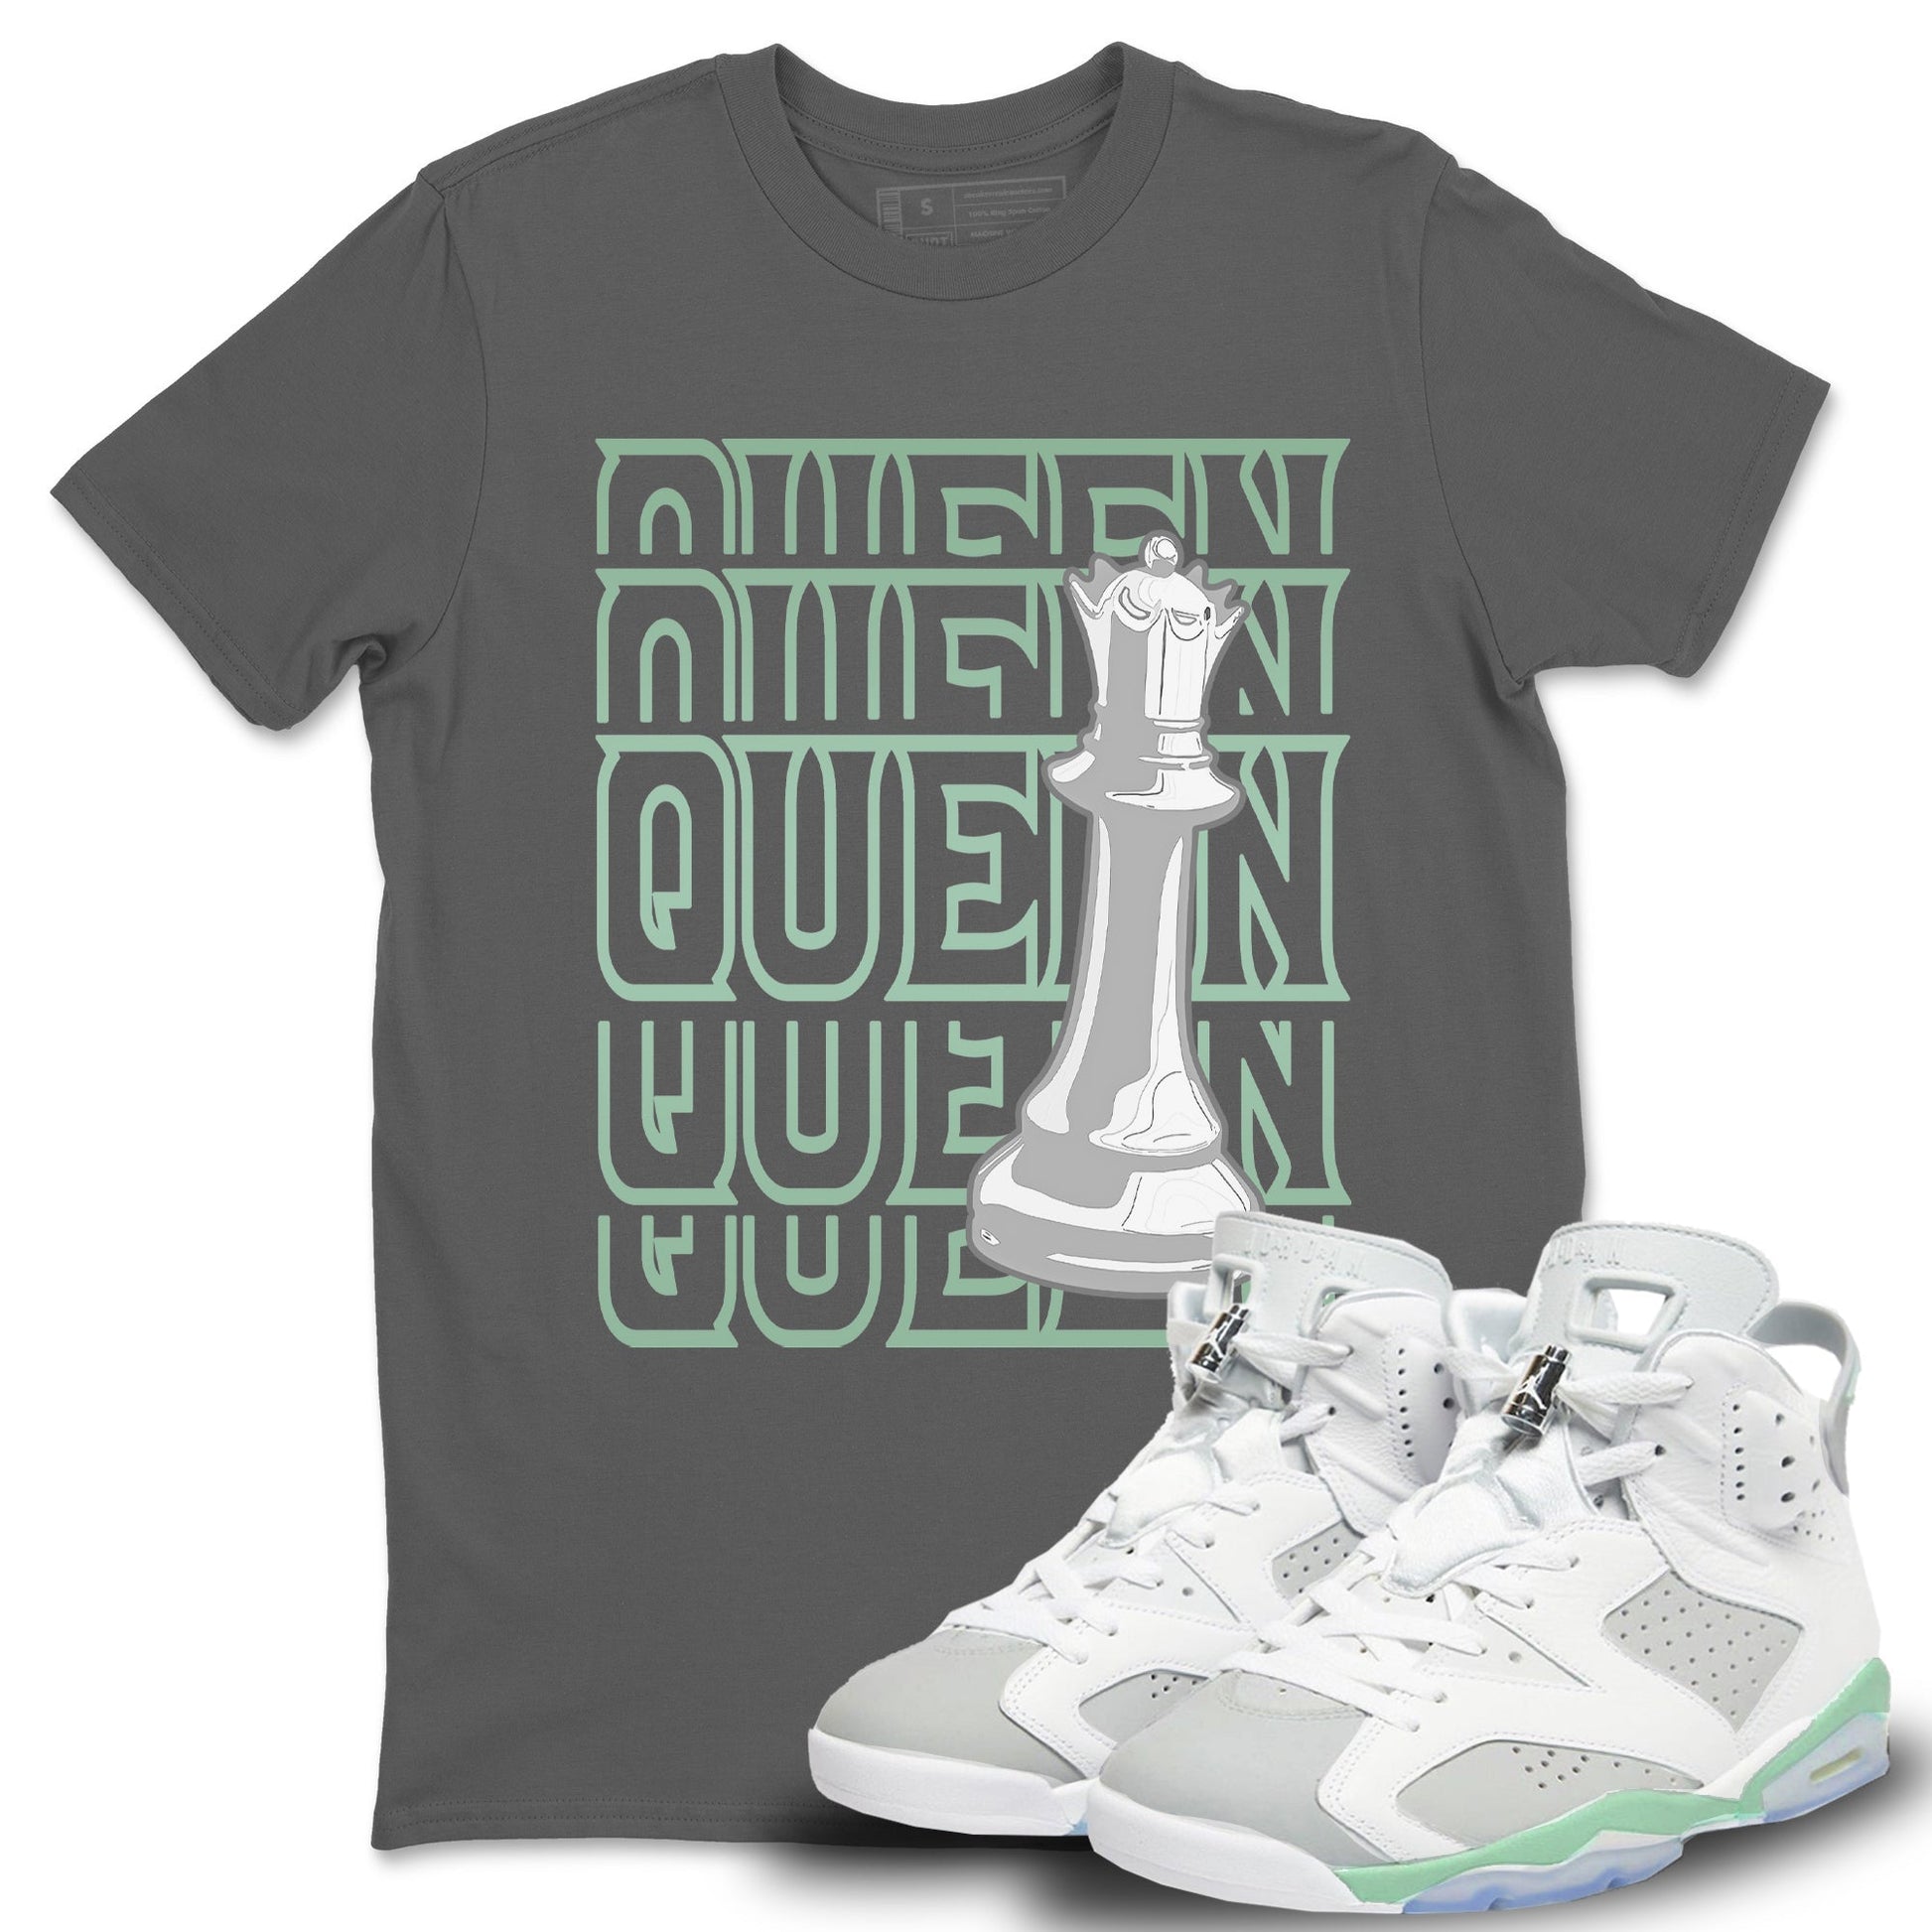 Jordan 6 Mint Foam Sneaker Match Tees Queen Sneaker Tees Jordan 6 Mint Foam Sneaker Release Tees Unisex Shirts